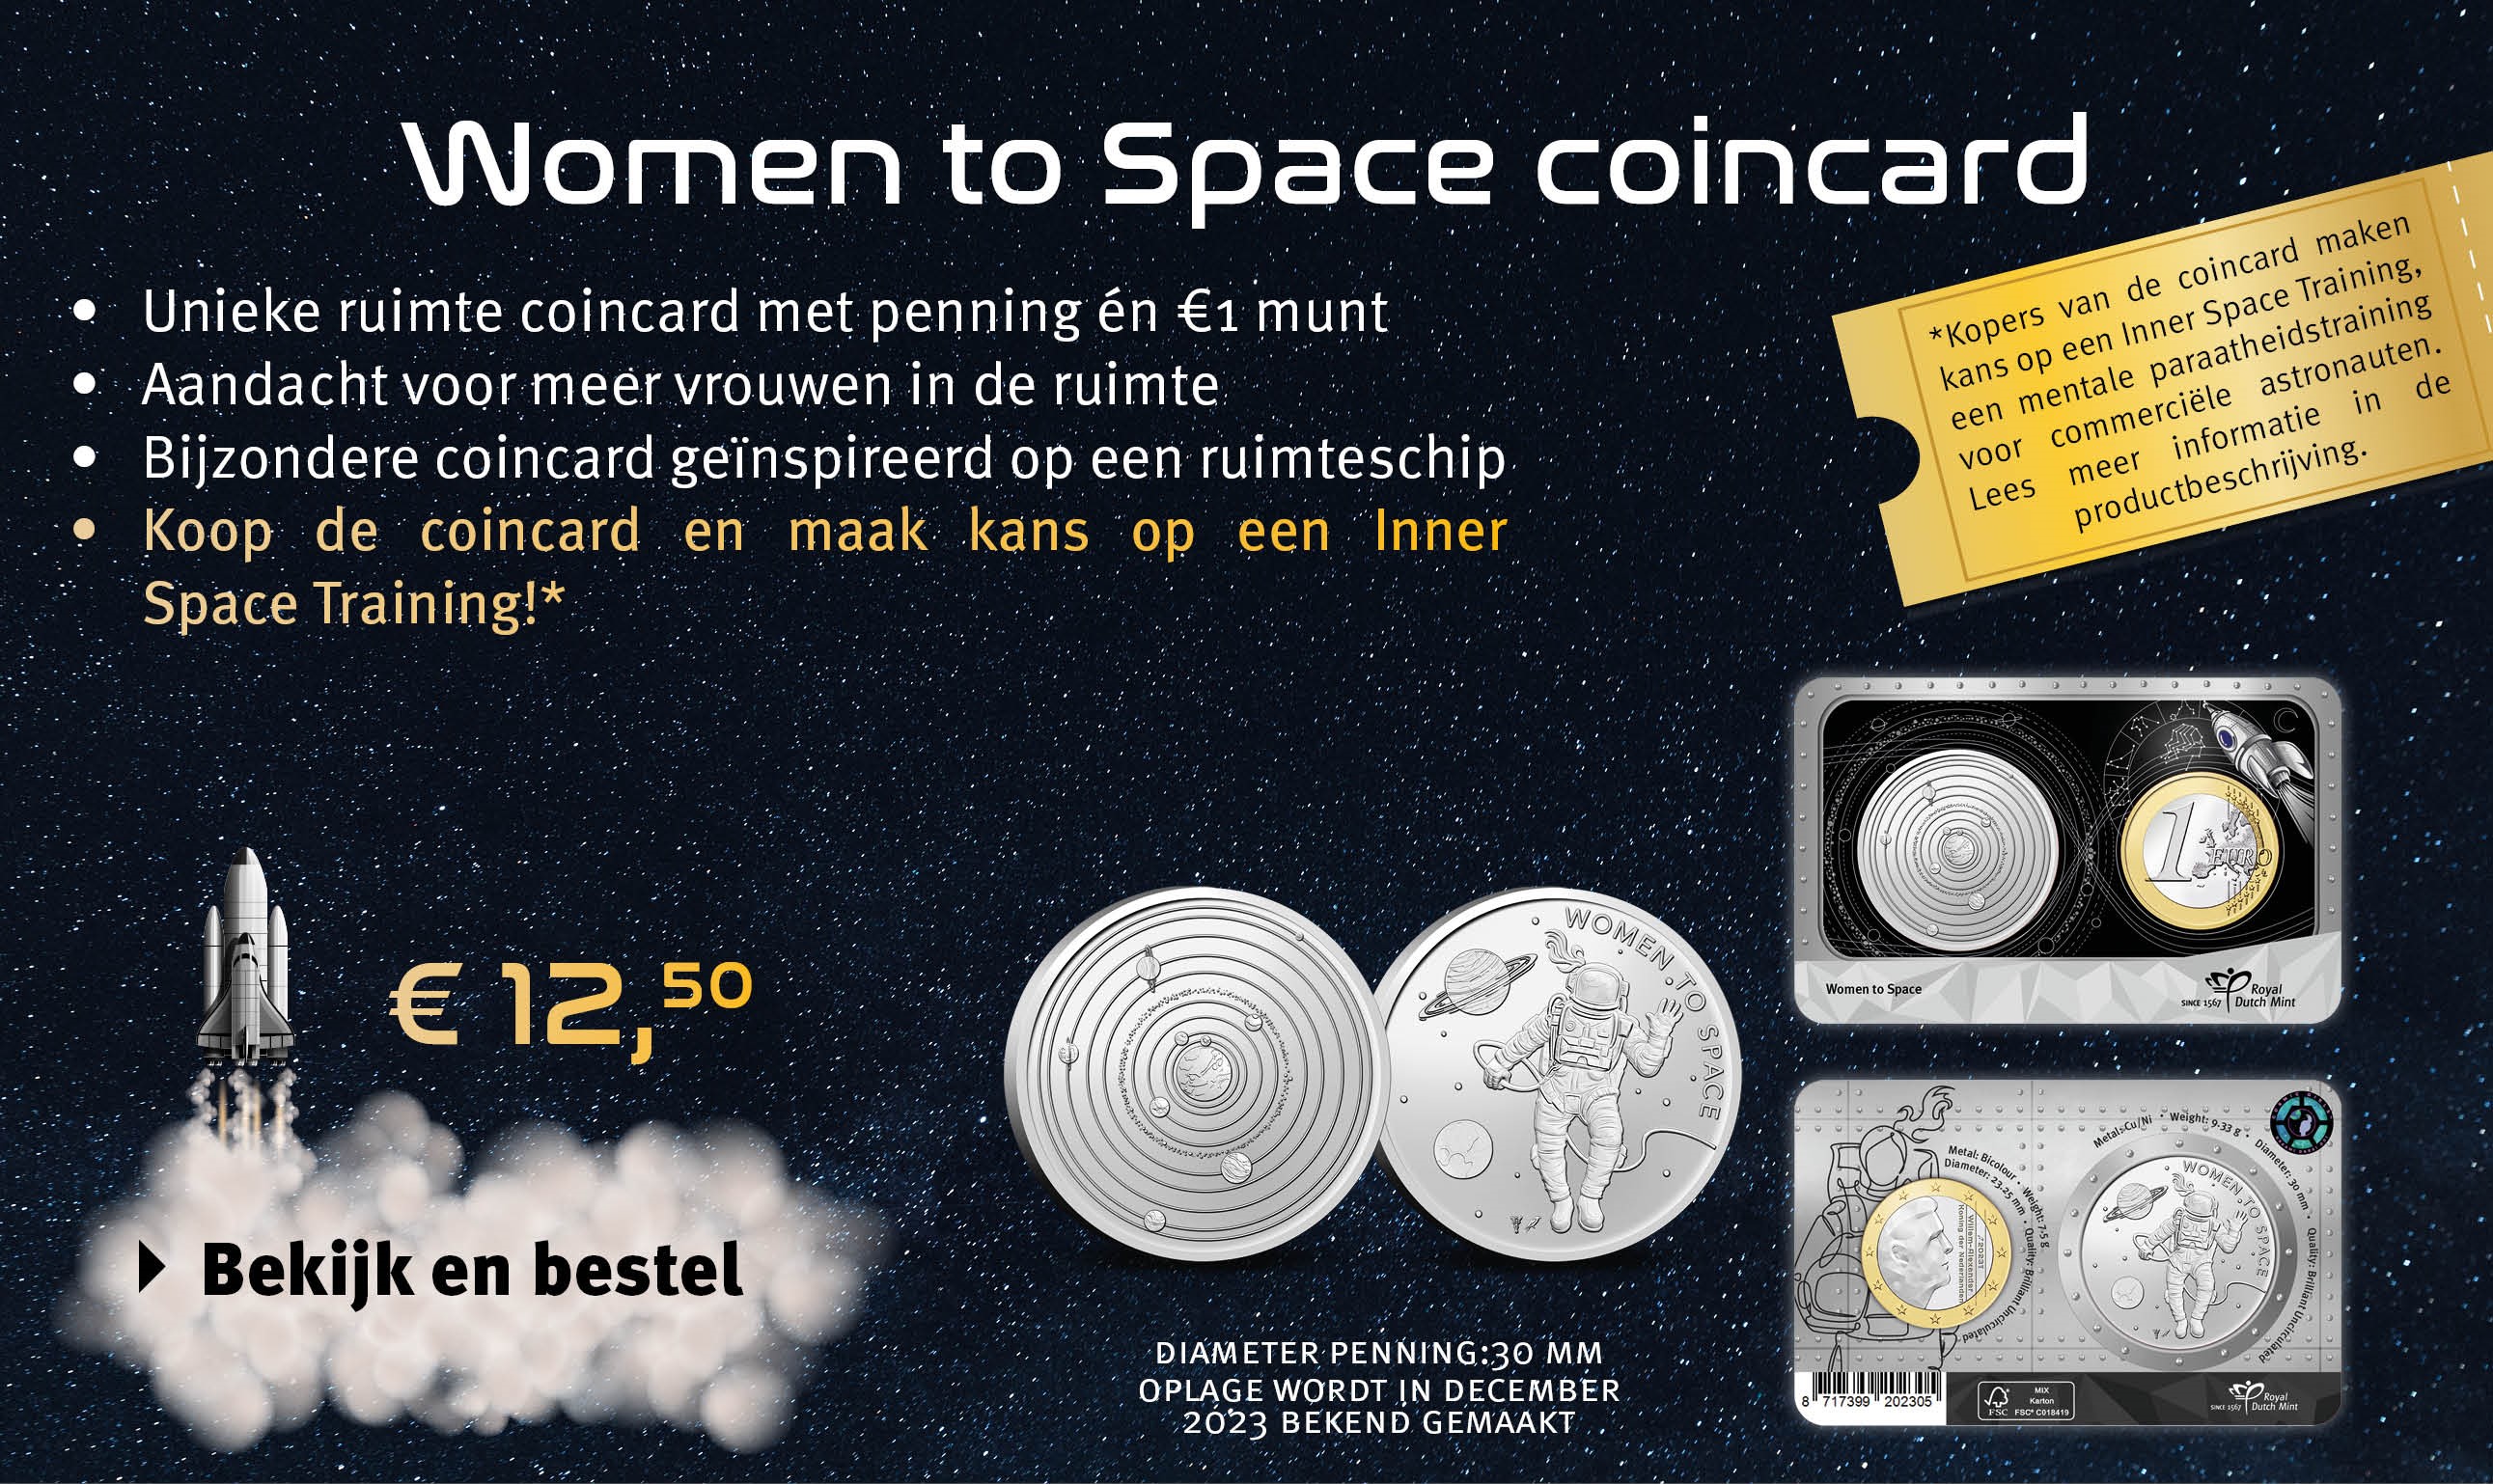 Bekijk en bestel: Women to space coincard